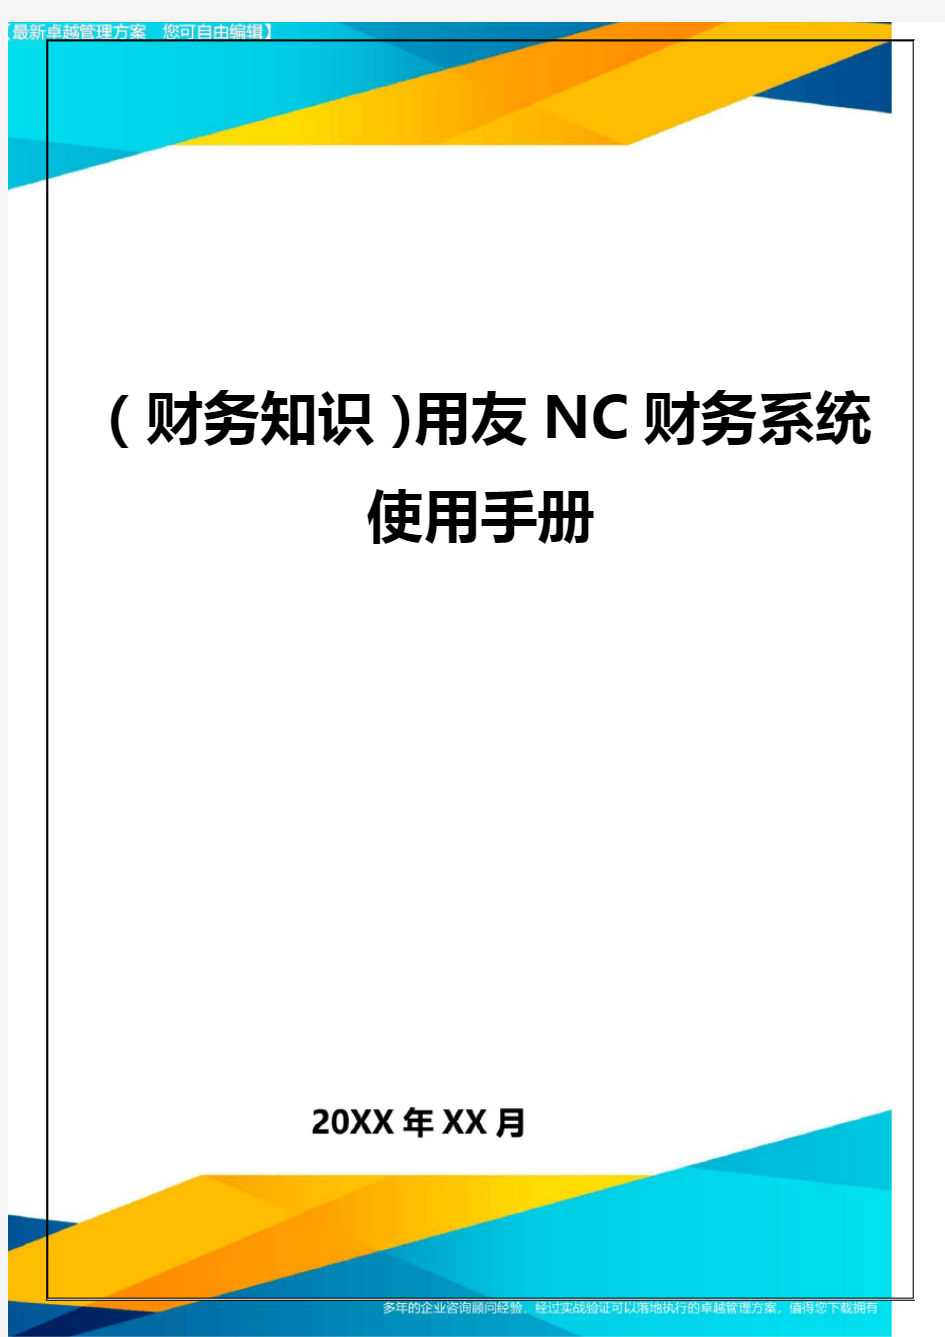 (财务知识)用友NC财务系统使用手册最全版